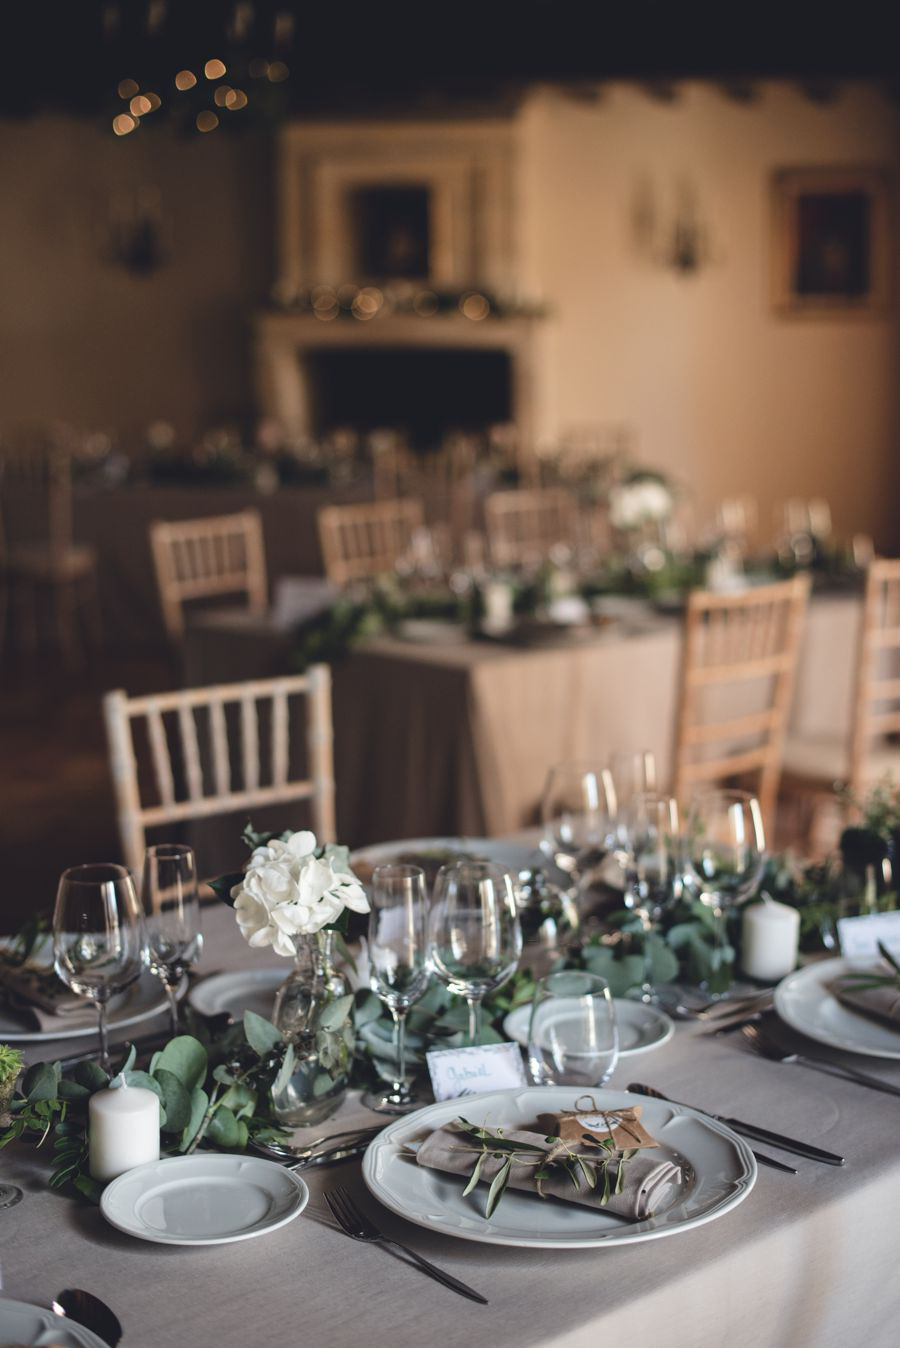 Décoration et centre de table en fleurs et eucalyptus lors de la réception de ce mariage de printemps par Elisabeth Delsol au thème végétal chic.